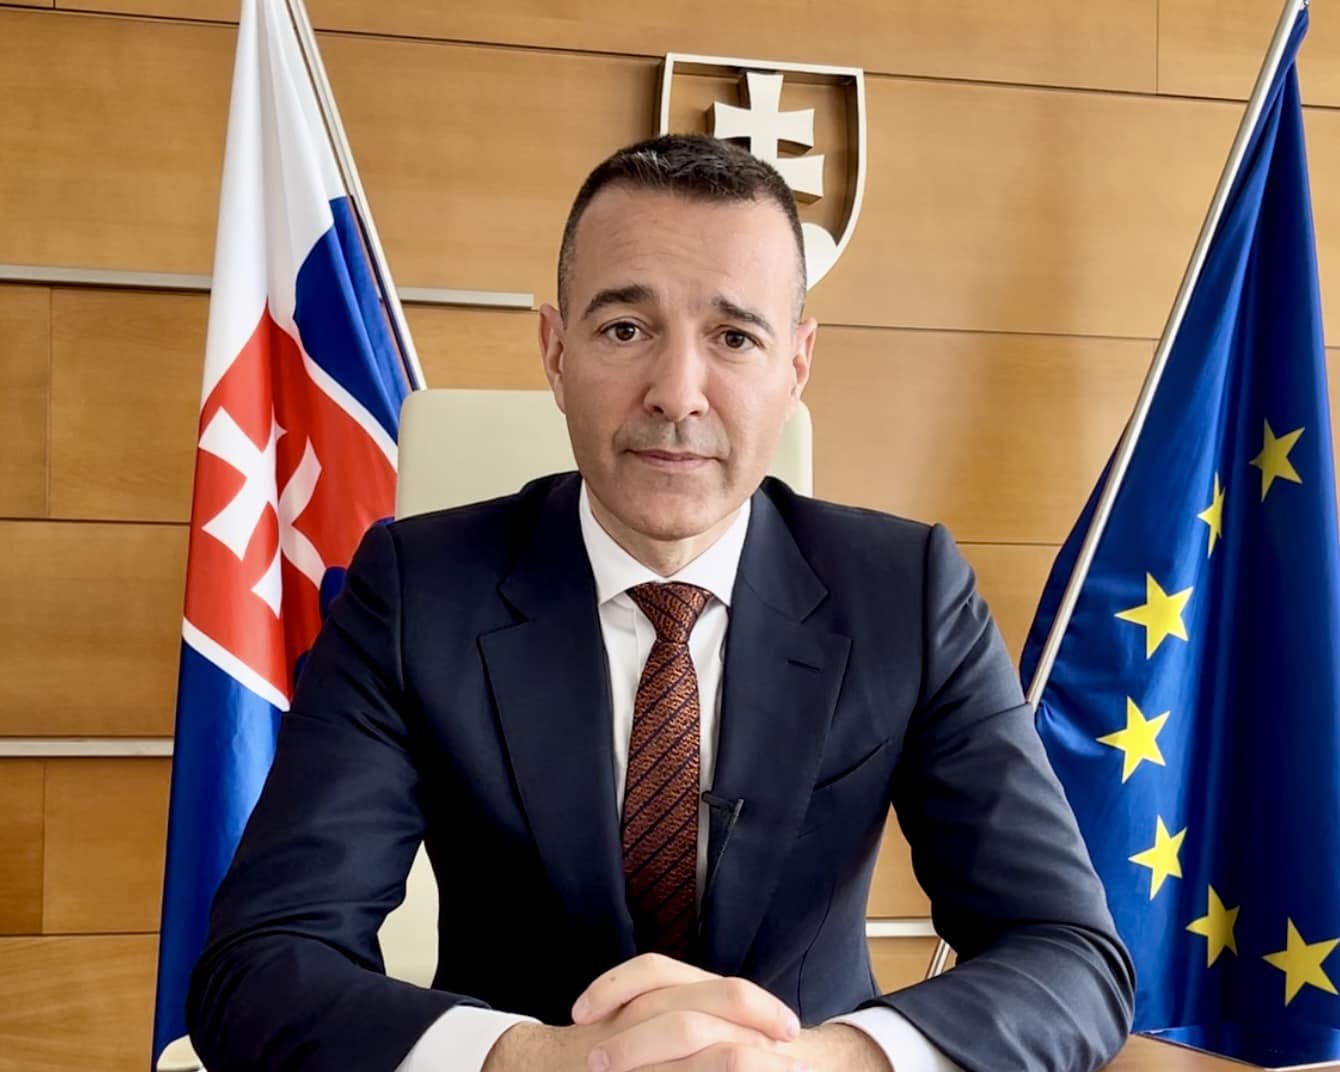 Minister školstva Tomáš Drucker – Slovensko po dvadsiatich rokoch v Európskej únii